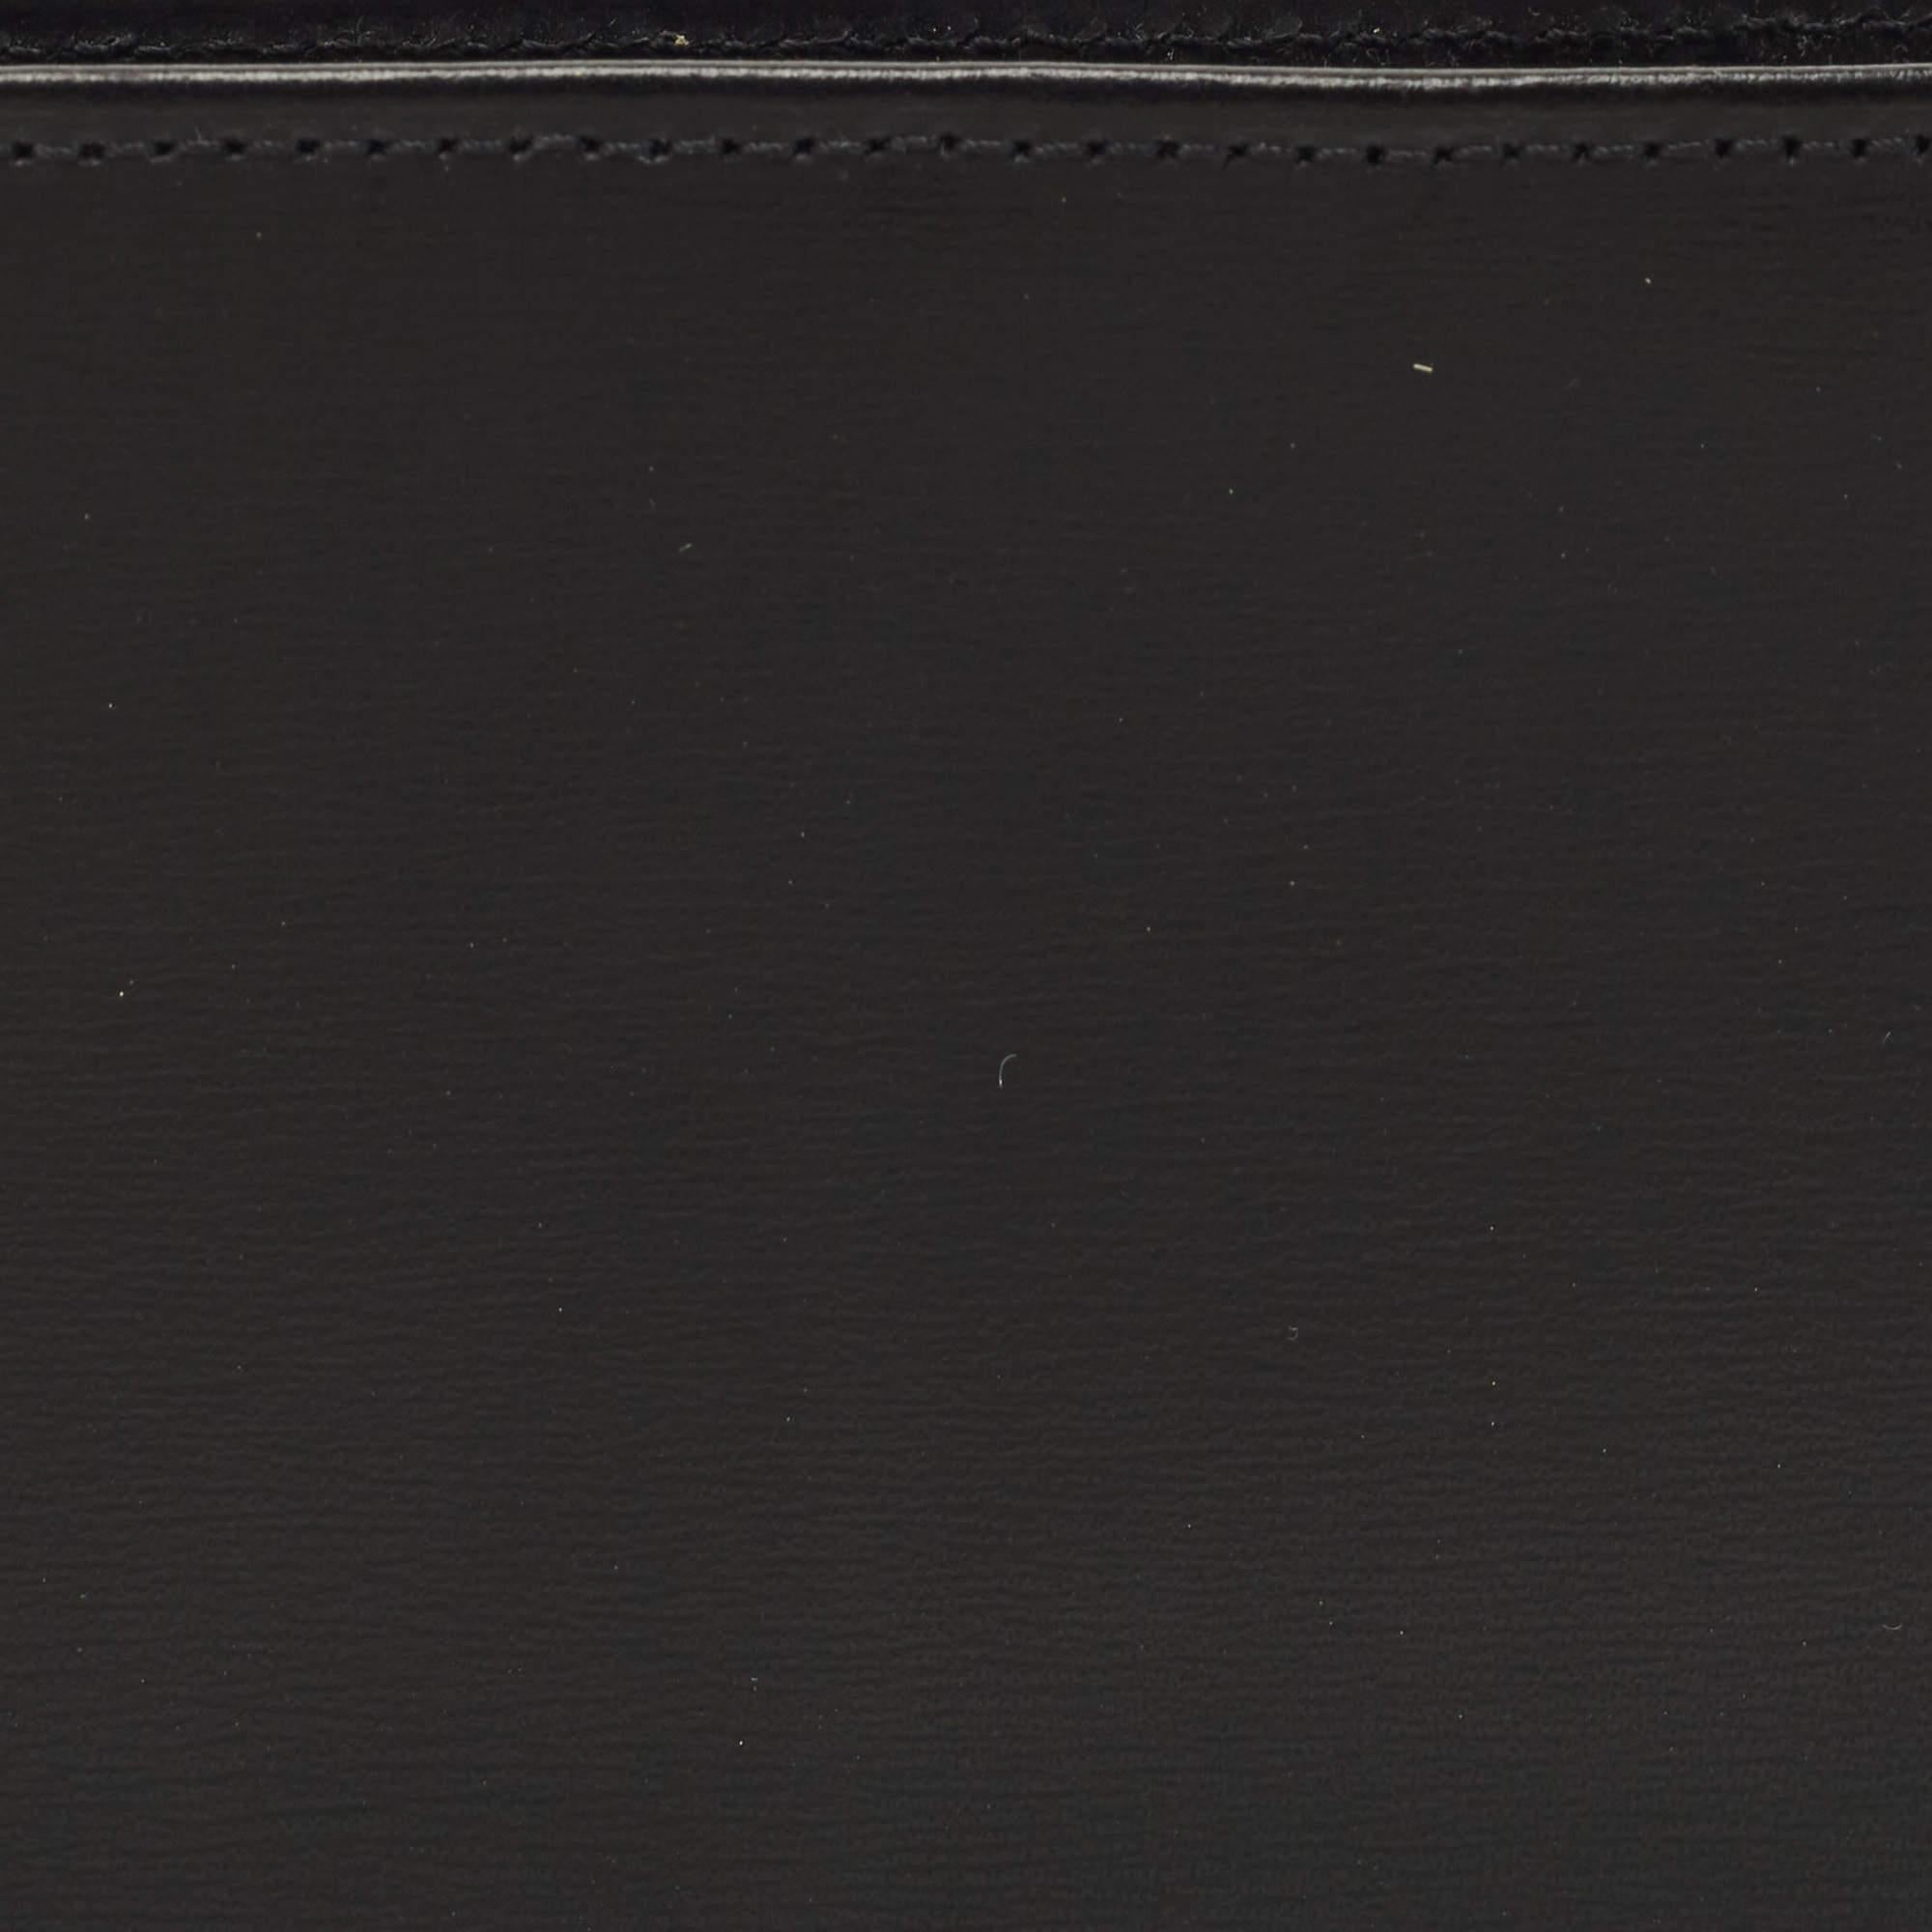 Cet authentique portefeuille pour homme de Cartier a une allure luxueuse. Fabriqué en cuir noir, il est équipé de compartiments et de multiples fentes pour ranger soigneusement vos cartes et votre argent.

